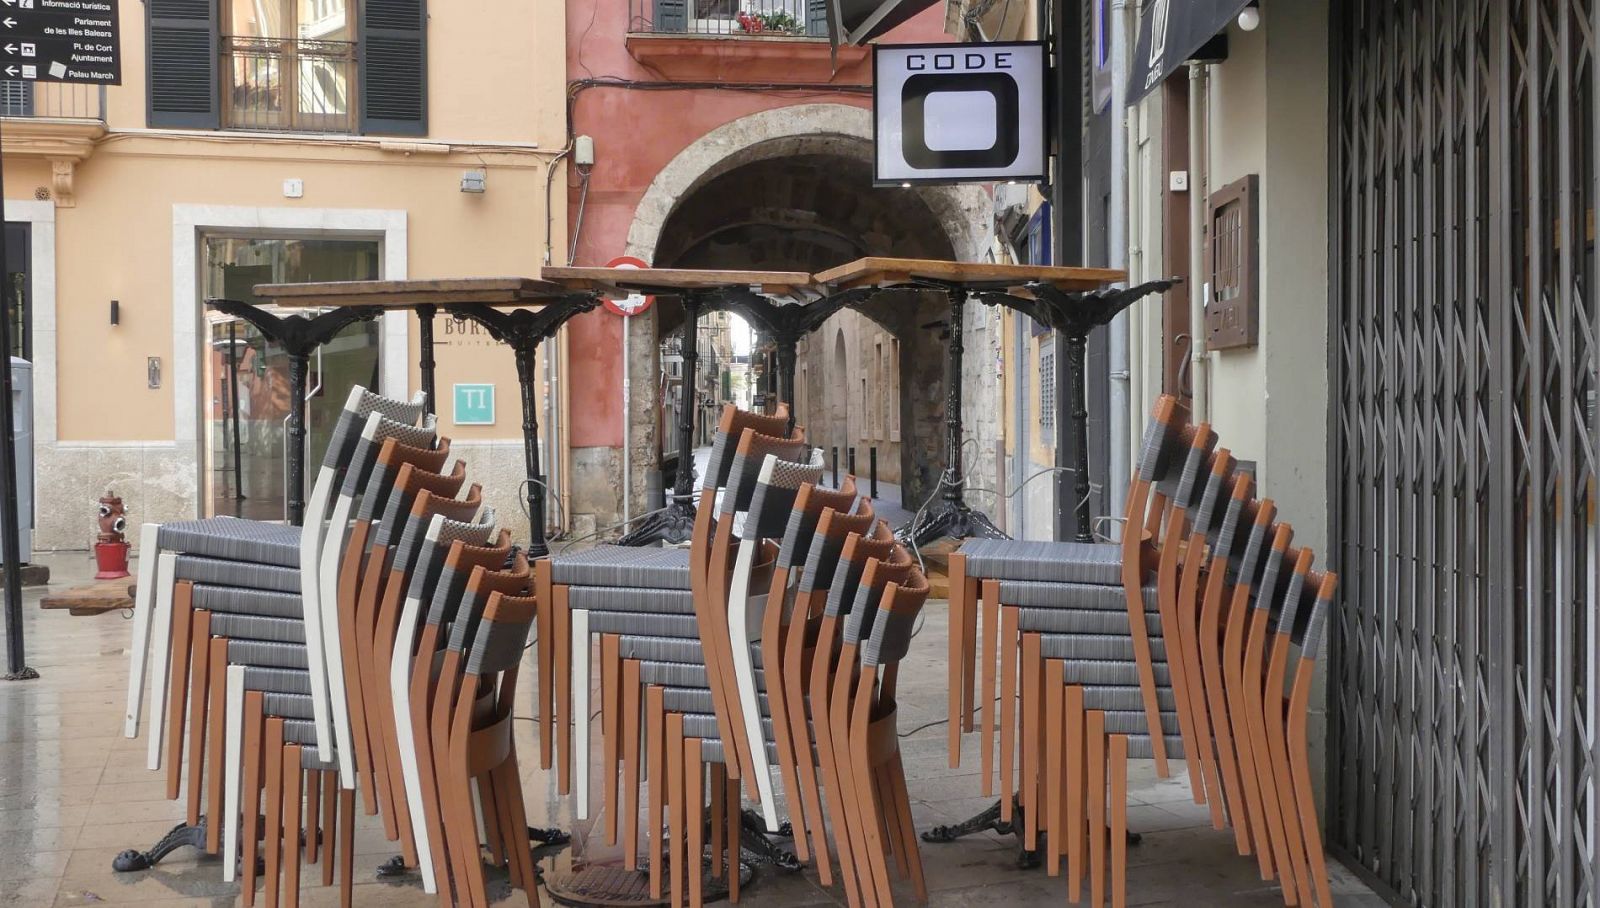 Mesas apiladas junto a un bar cerrado en Palma de Mallorca